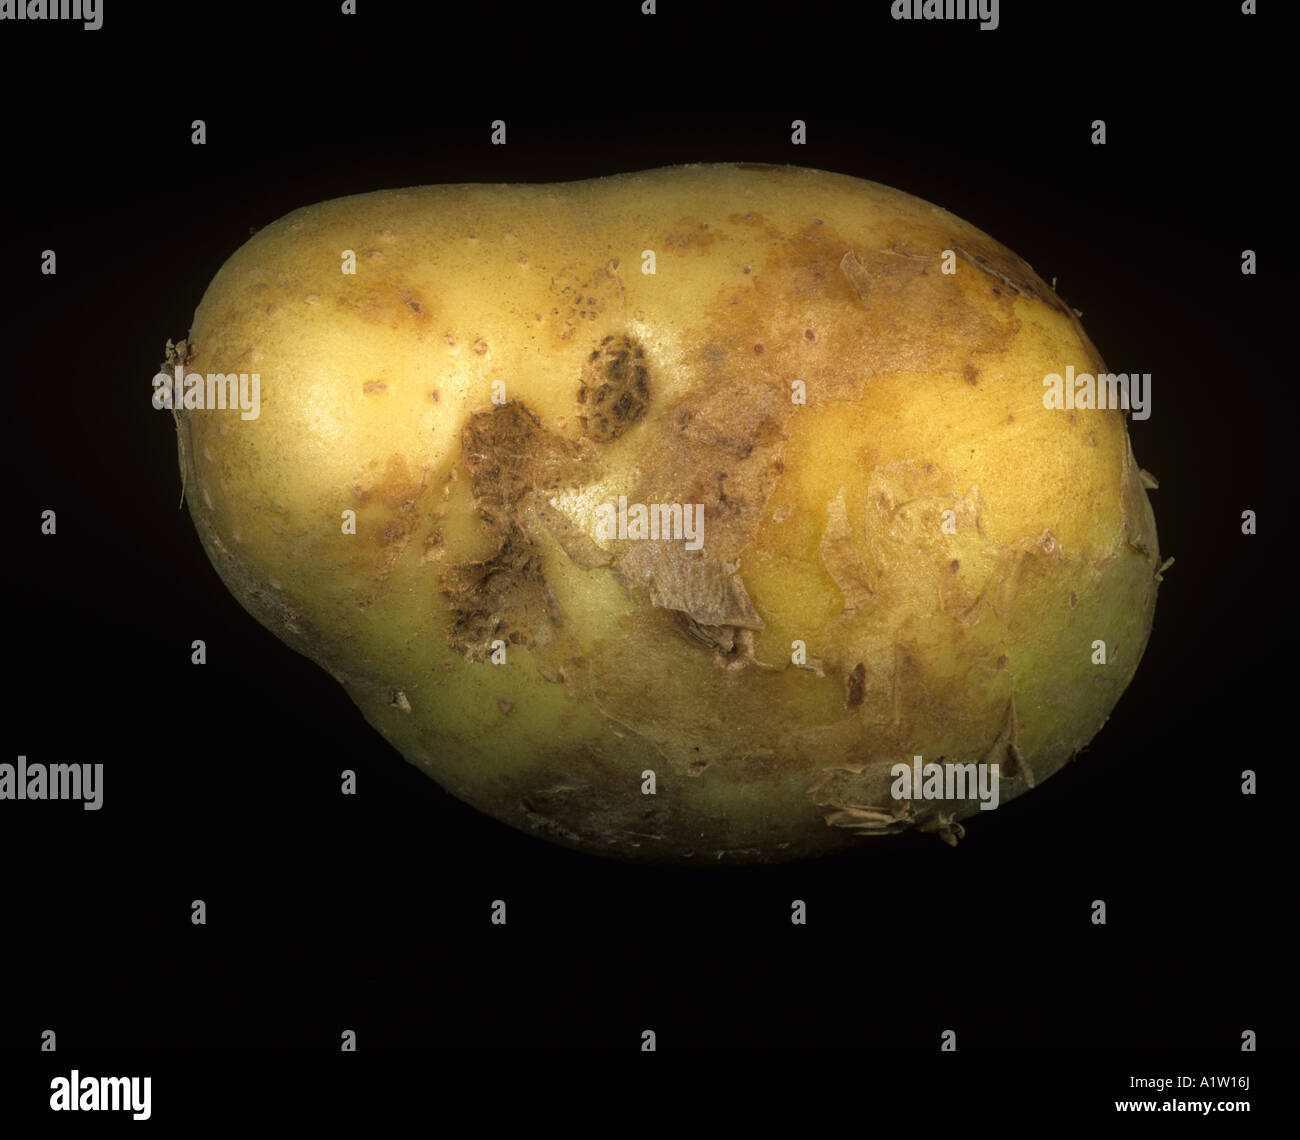 Early tuber symptoms of black scurf Rhizoctonia solani on a potato tuber Scotland Stock Photo